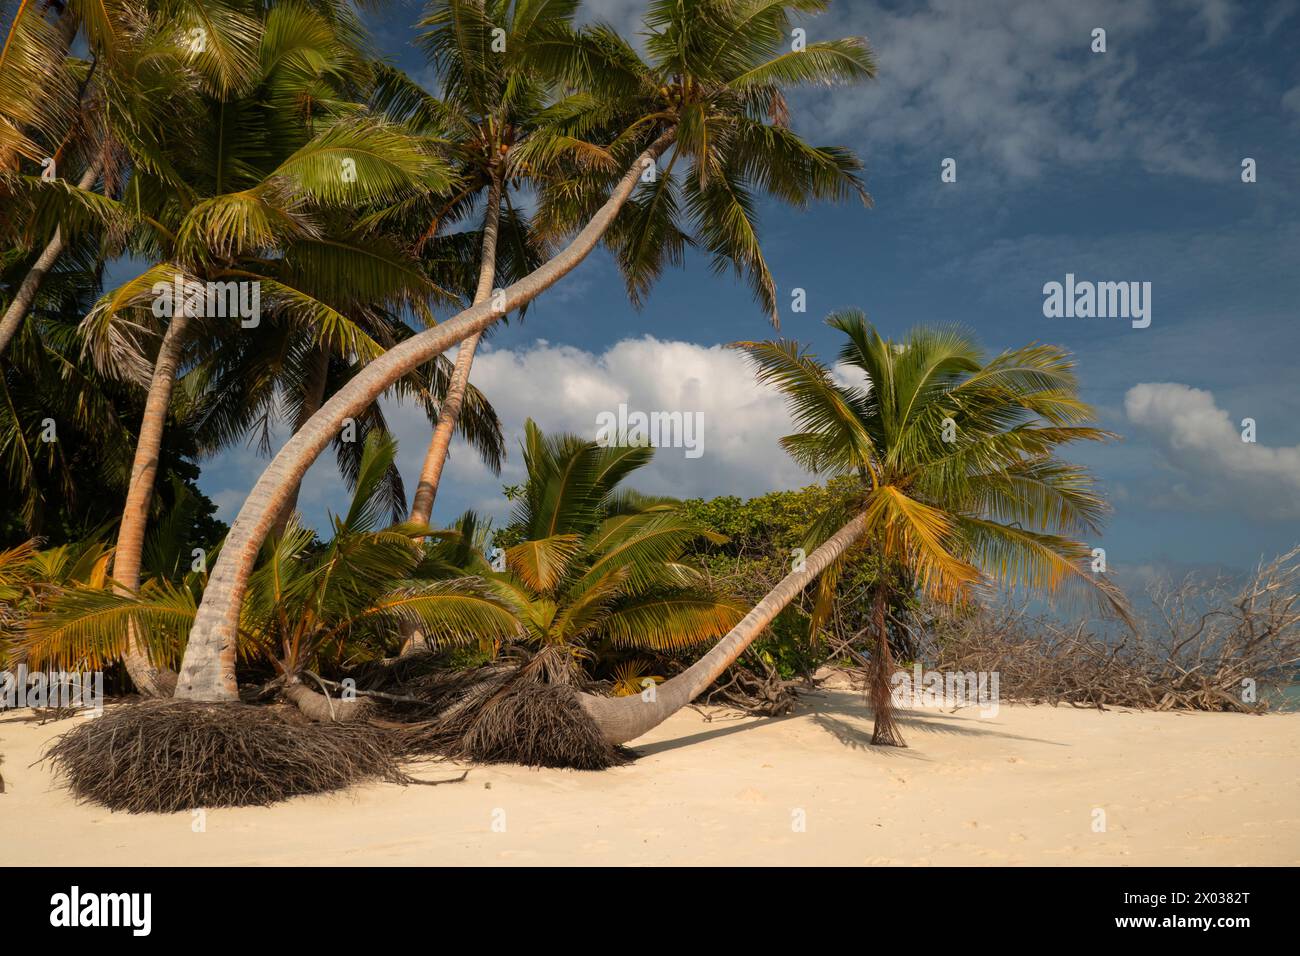 Palmen am Strand, Bijoutier Island, Farquhar Atoll, Seychellen, Indischer Ozean Stockfoto